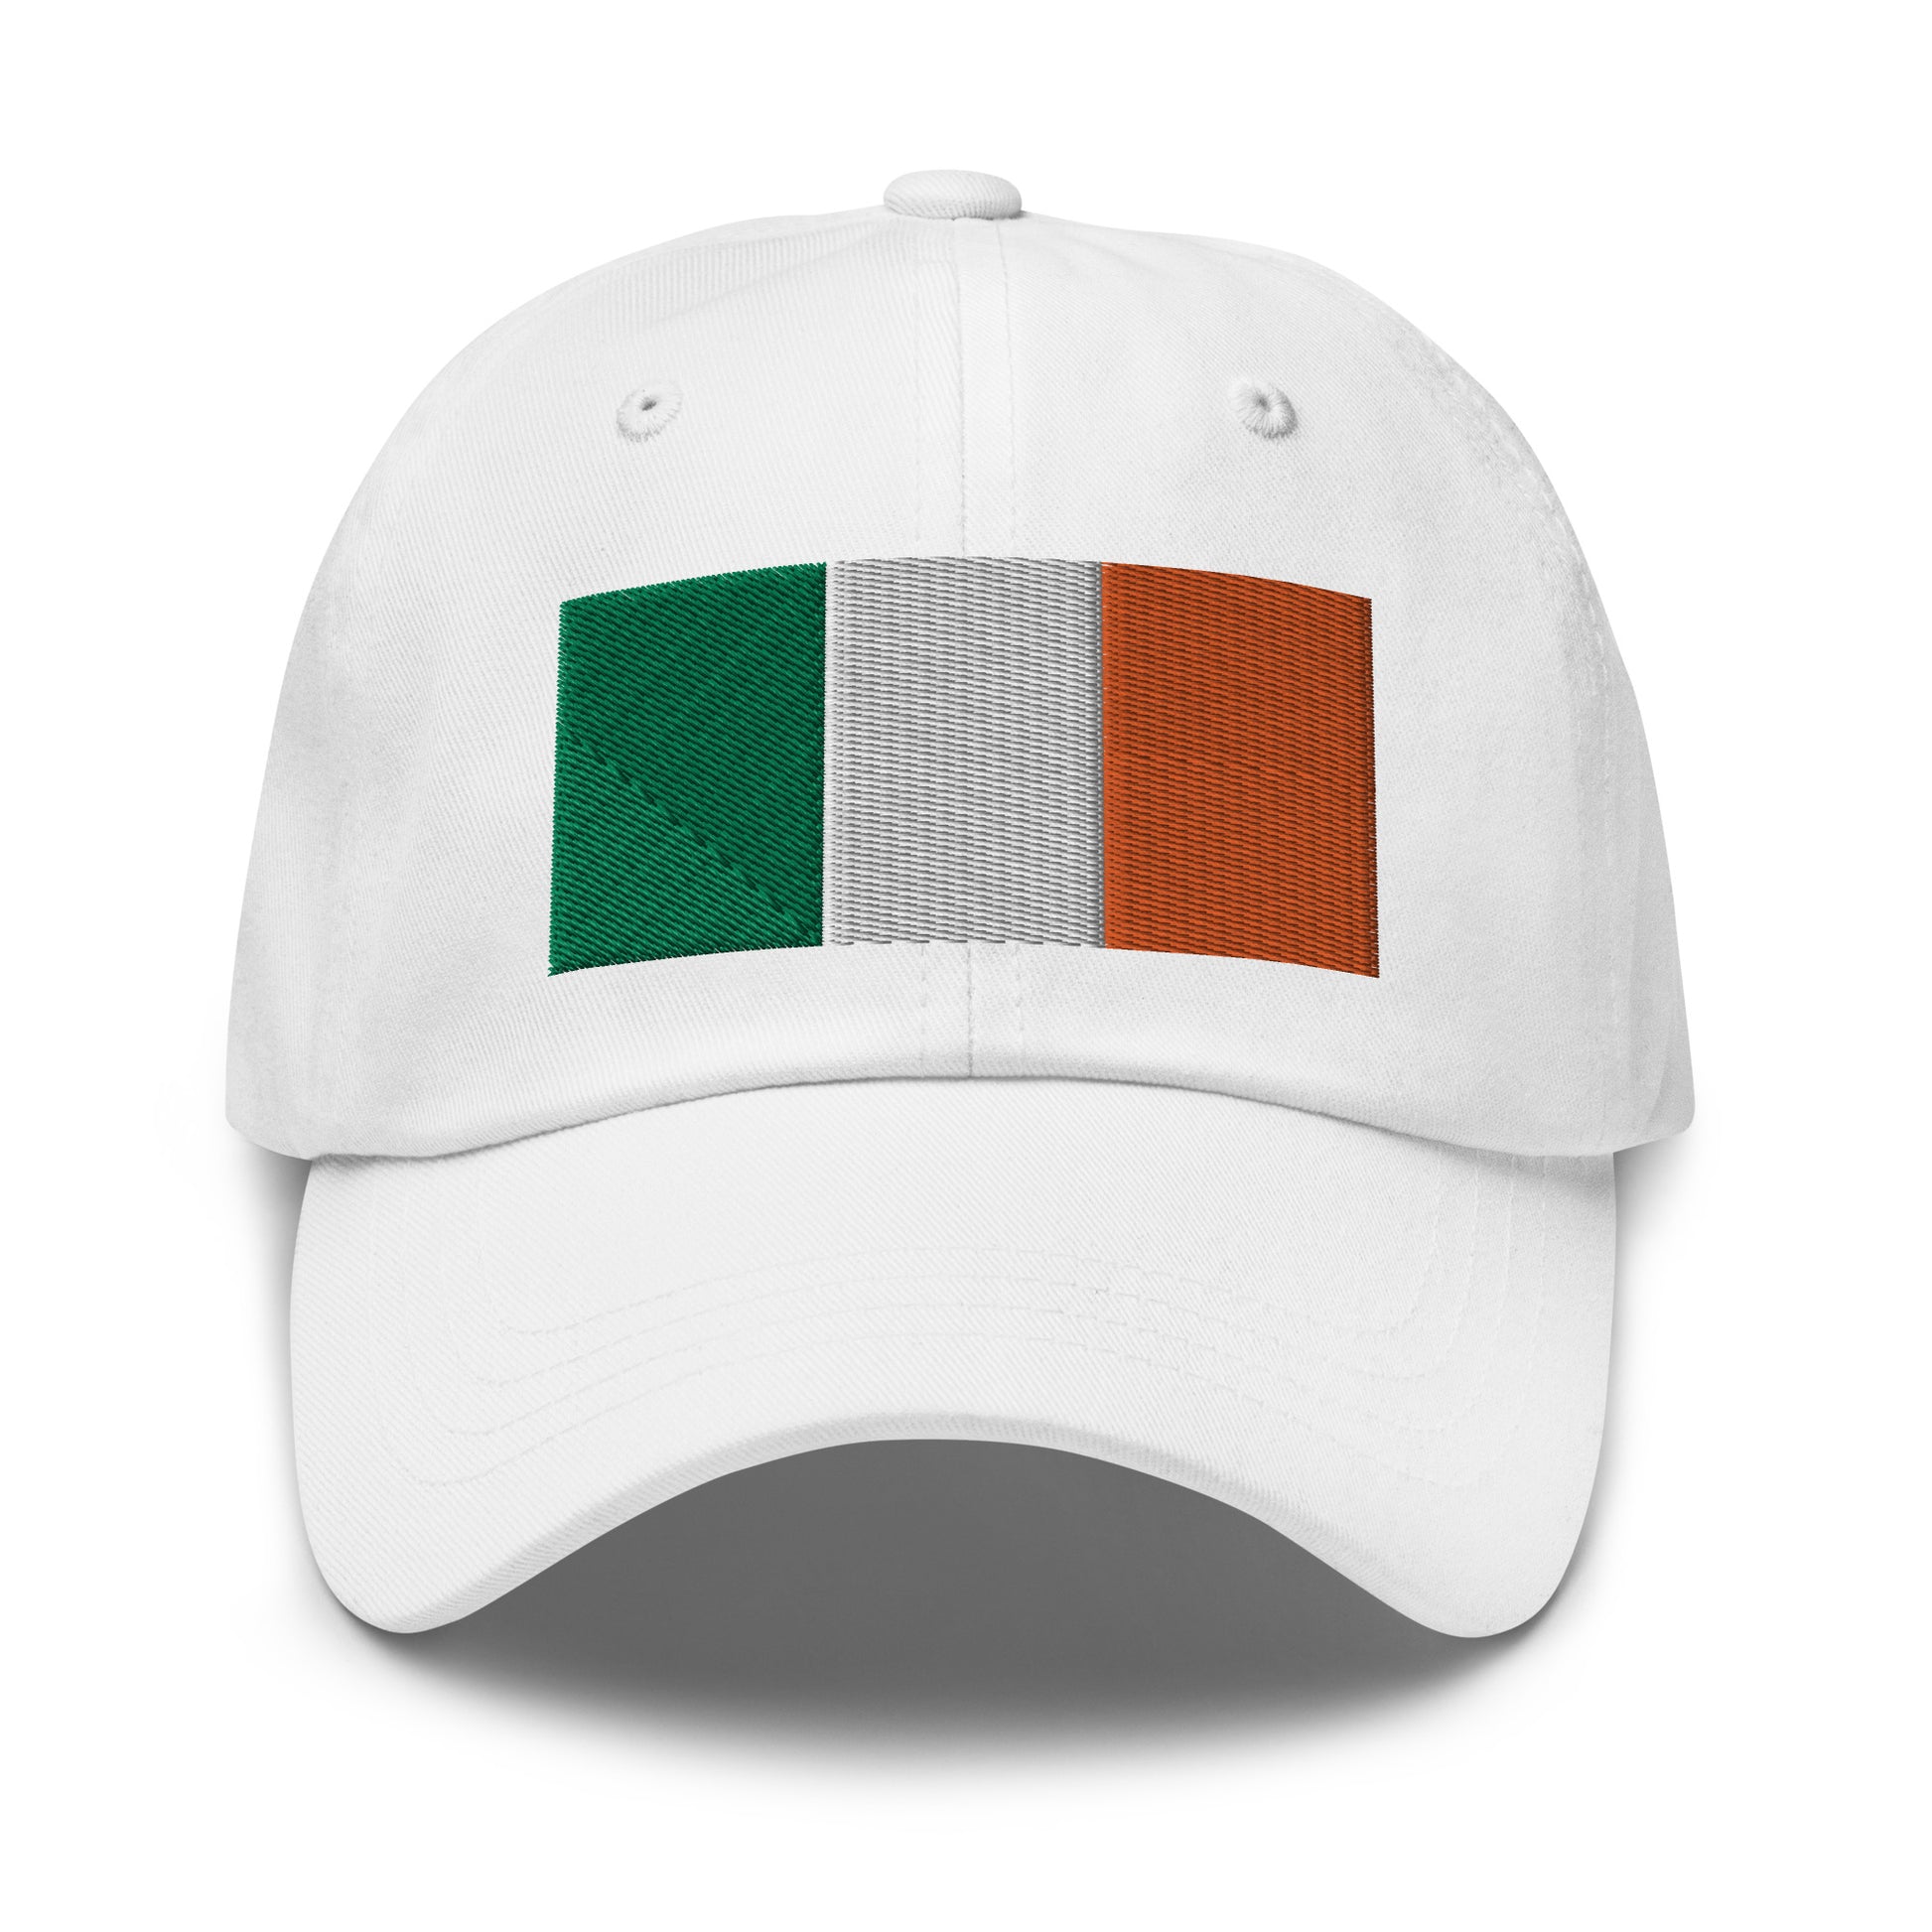 Adjustable Embroidered Irish Flag Dad Hat